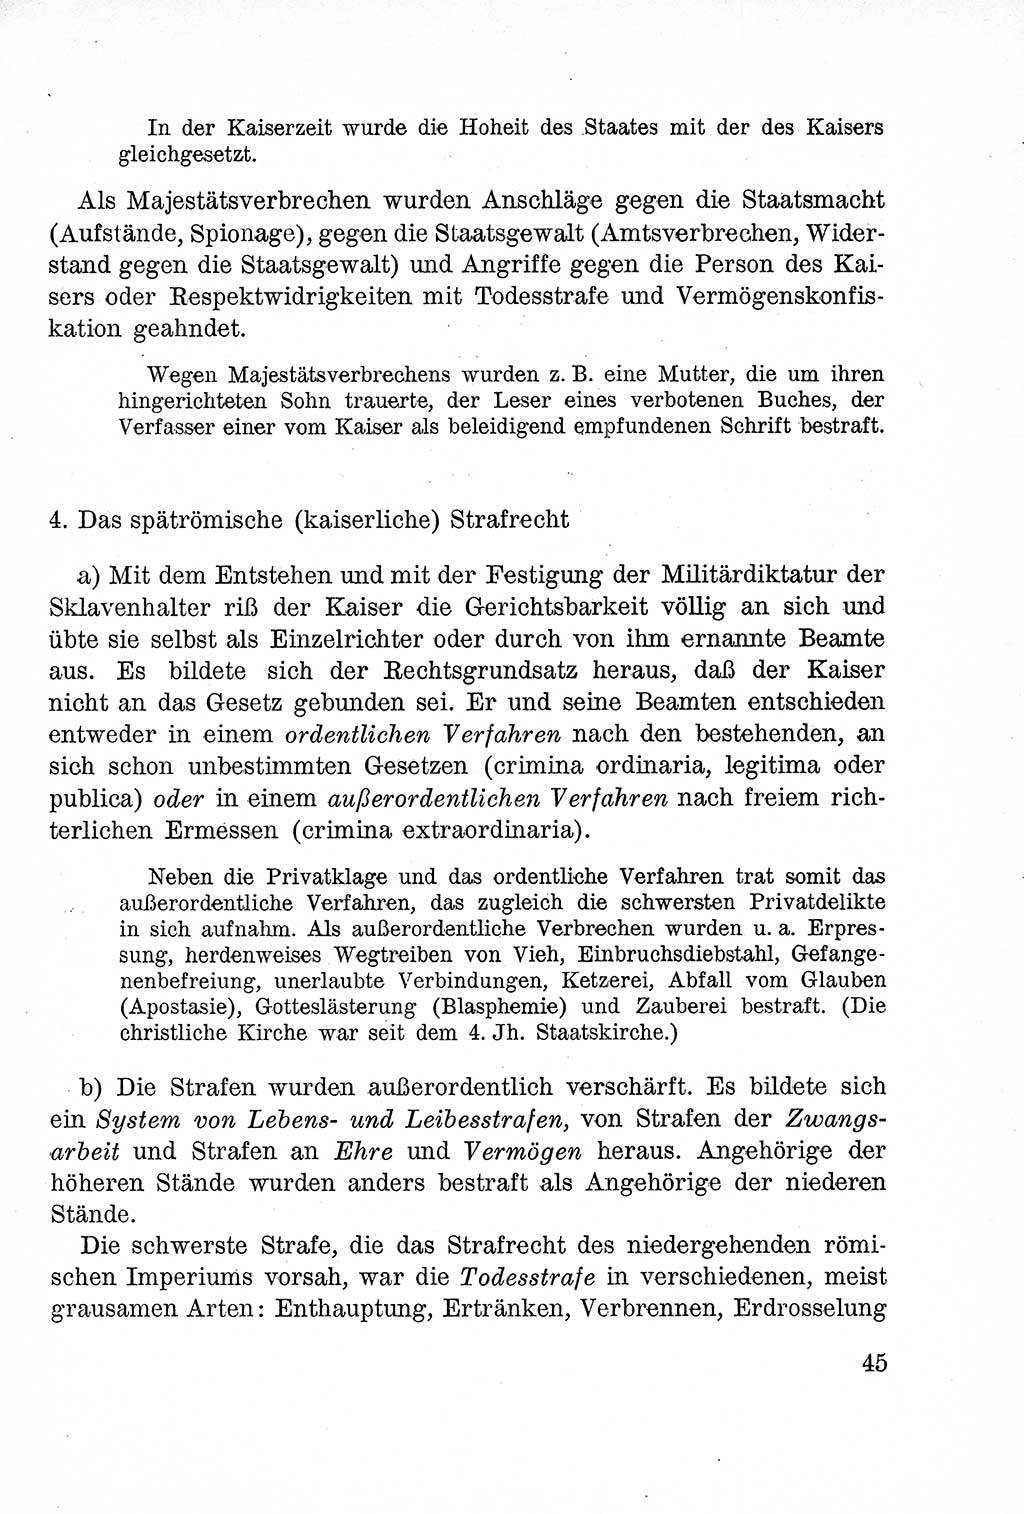 Lehrbuch des Strafrechts der Deutschen Demokratischen Republik (DDR), Allgemeiner Teil 1957, Seite 45 (Lb. Strafr. DDR AT 1957, S. 45)